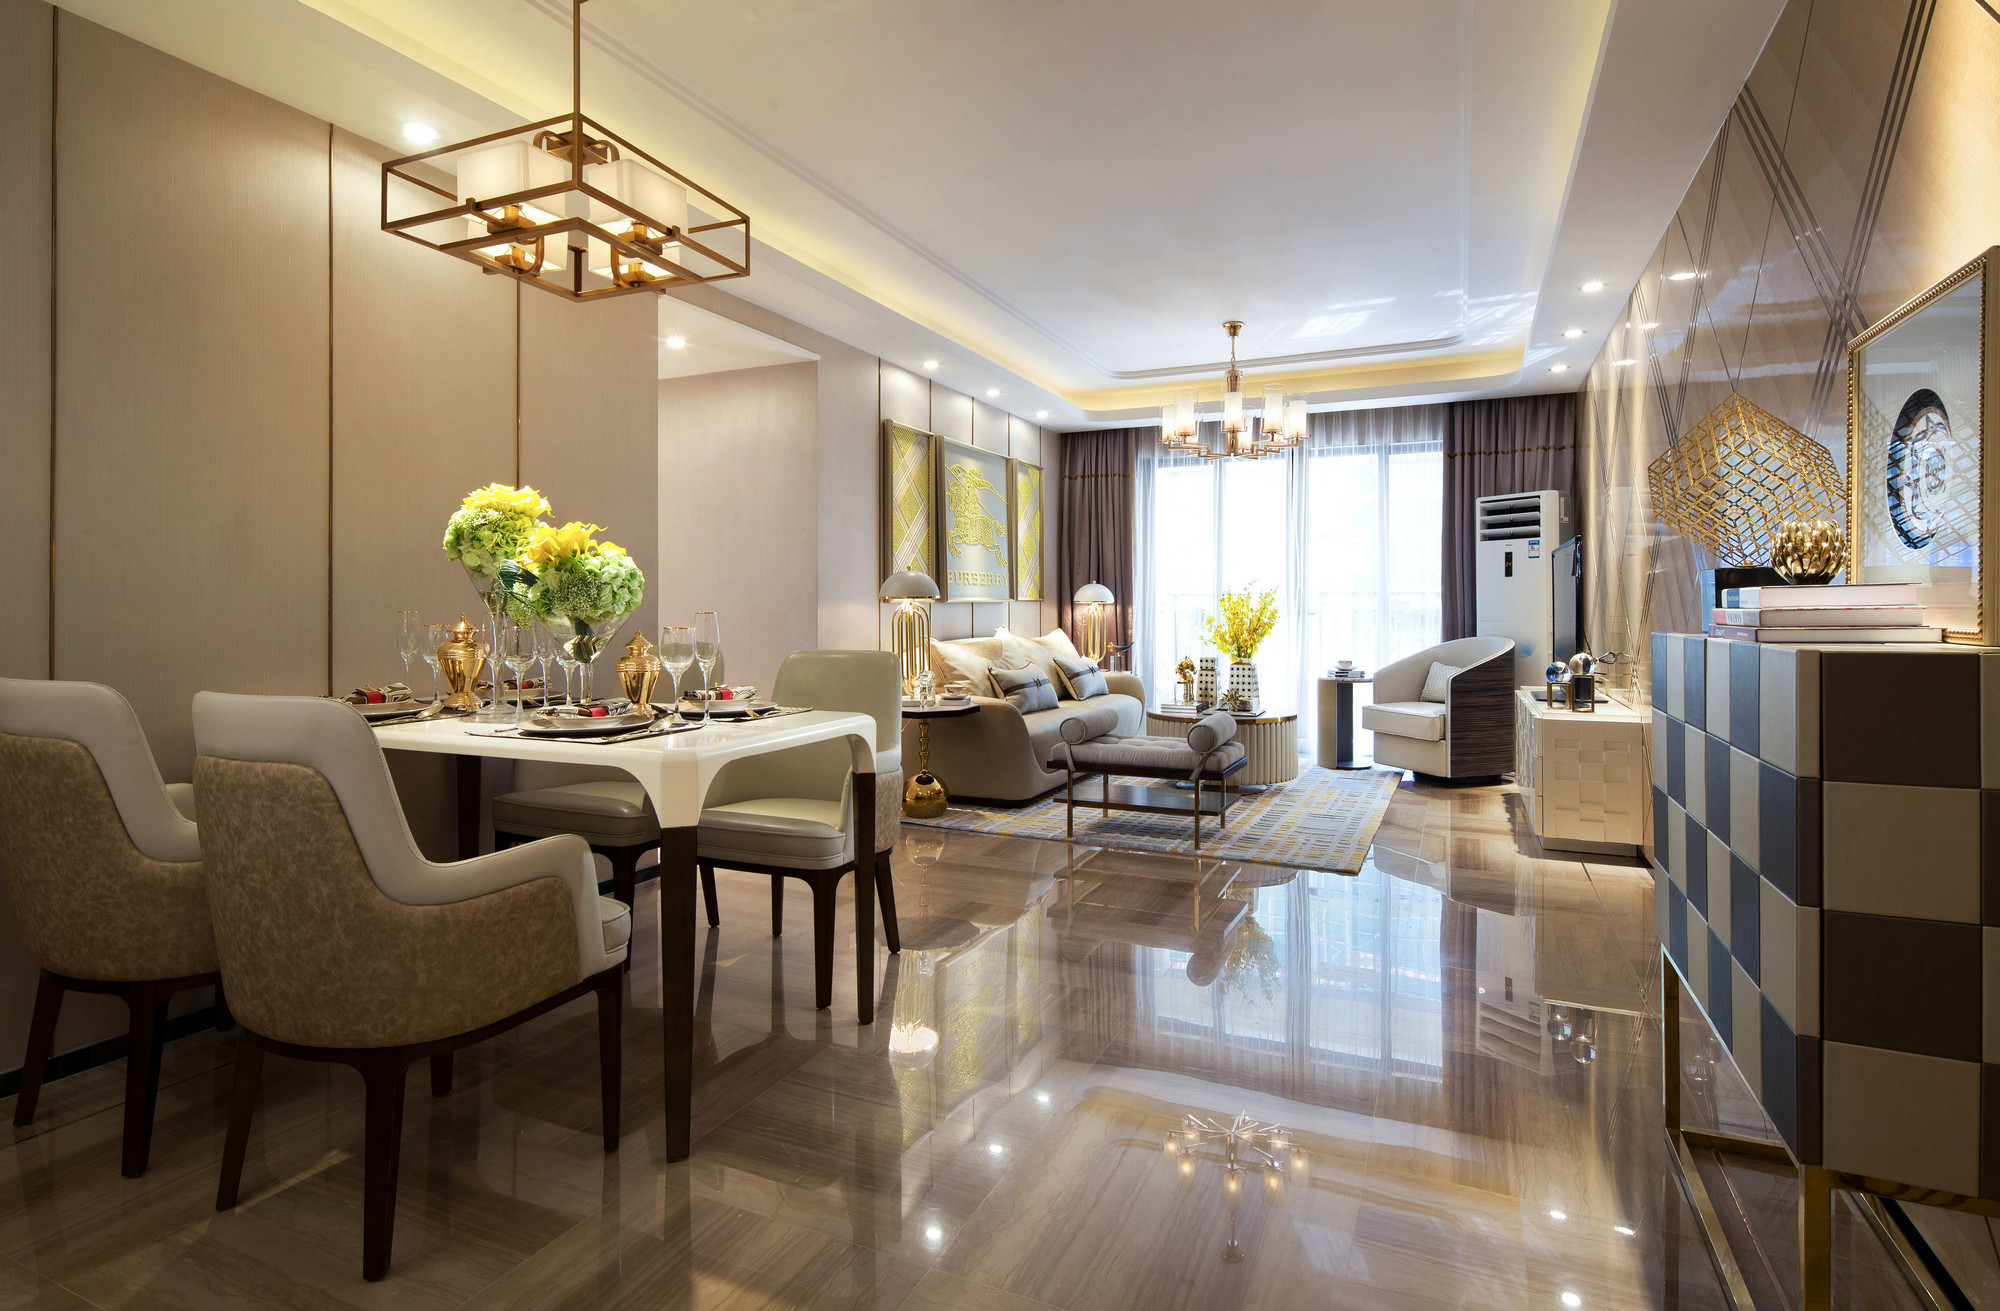 餐厅位于客厅一侧，风格配色与客厅一致，打造出整洁有序的用餐环境。